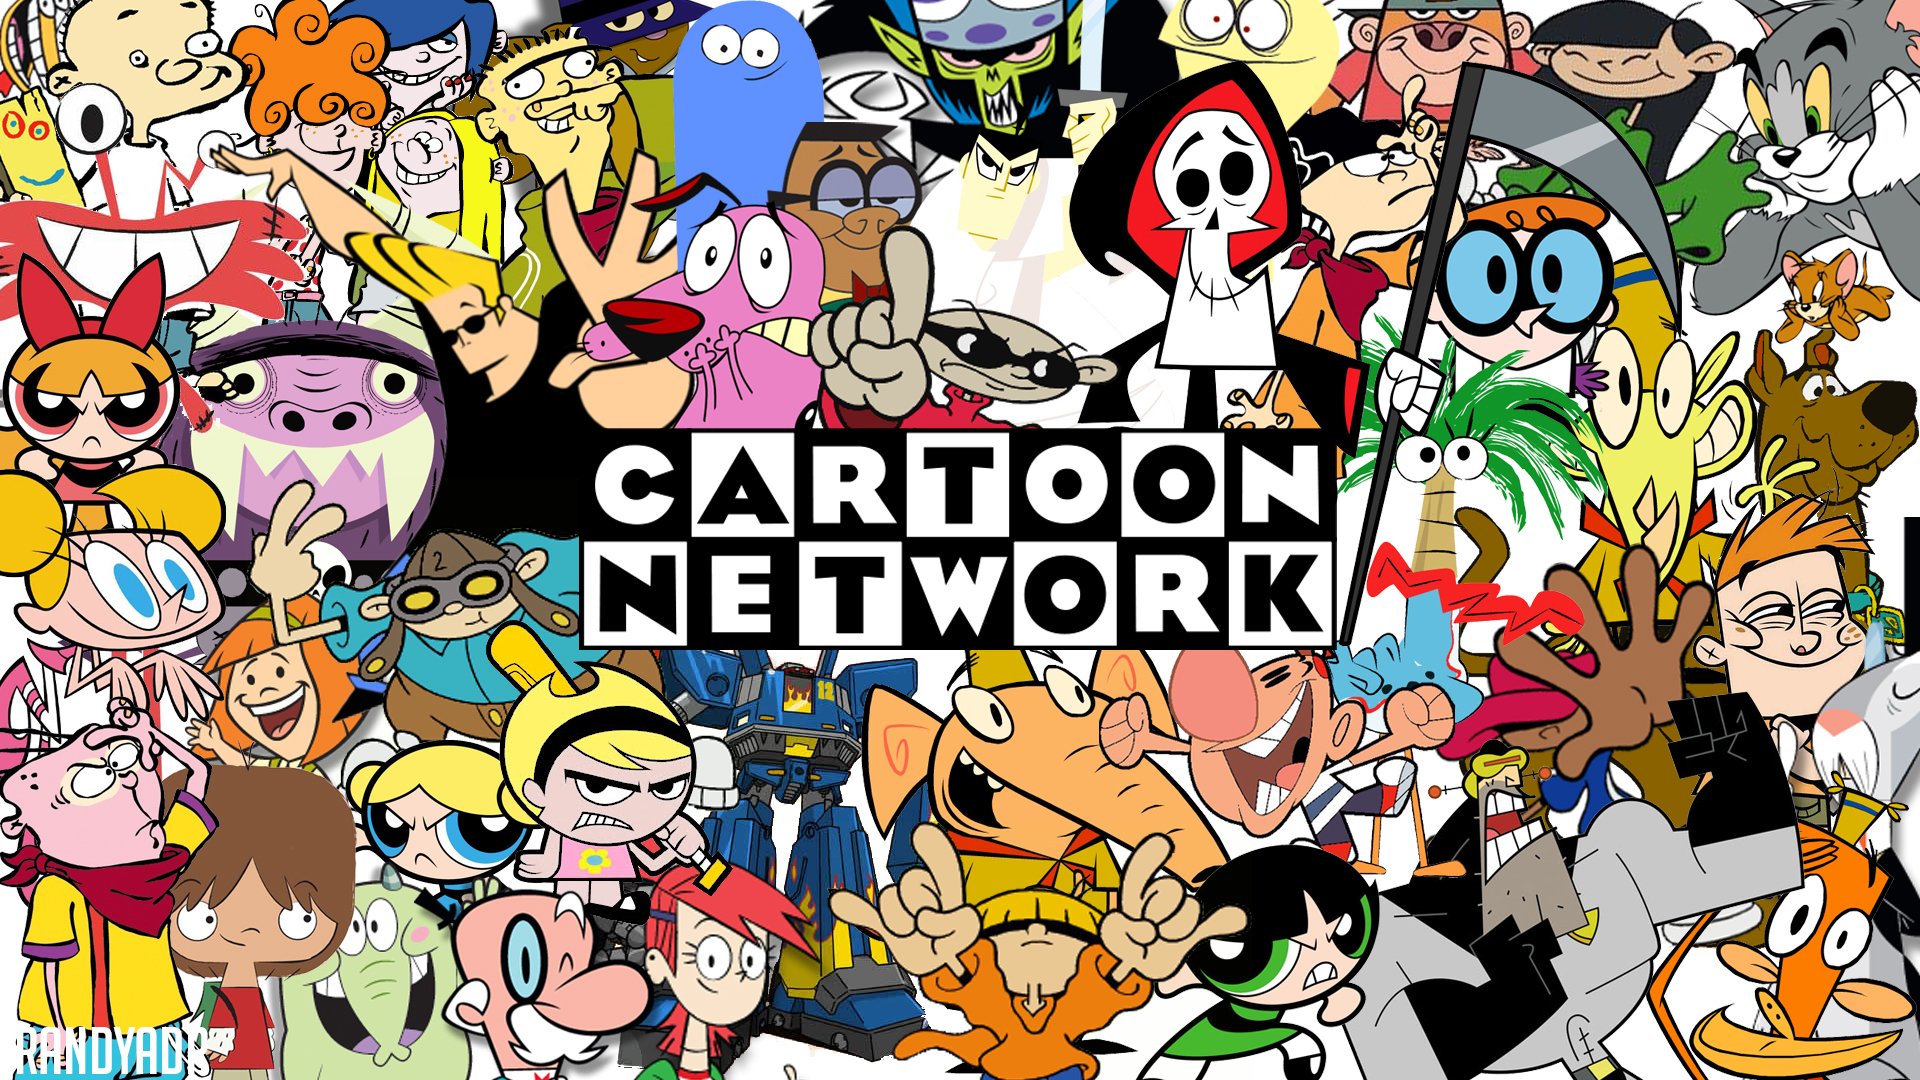 Now THIS is Cartoon Network! - Cartoon network người hâm mộ Art (37755827)  - fanpop